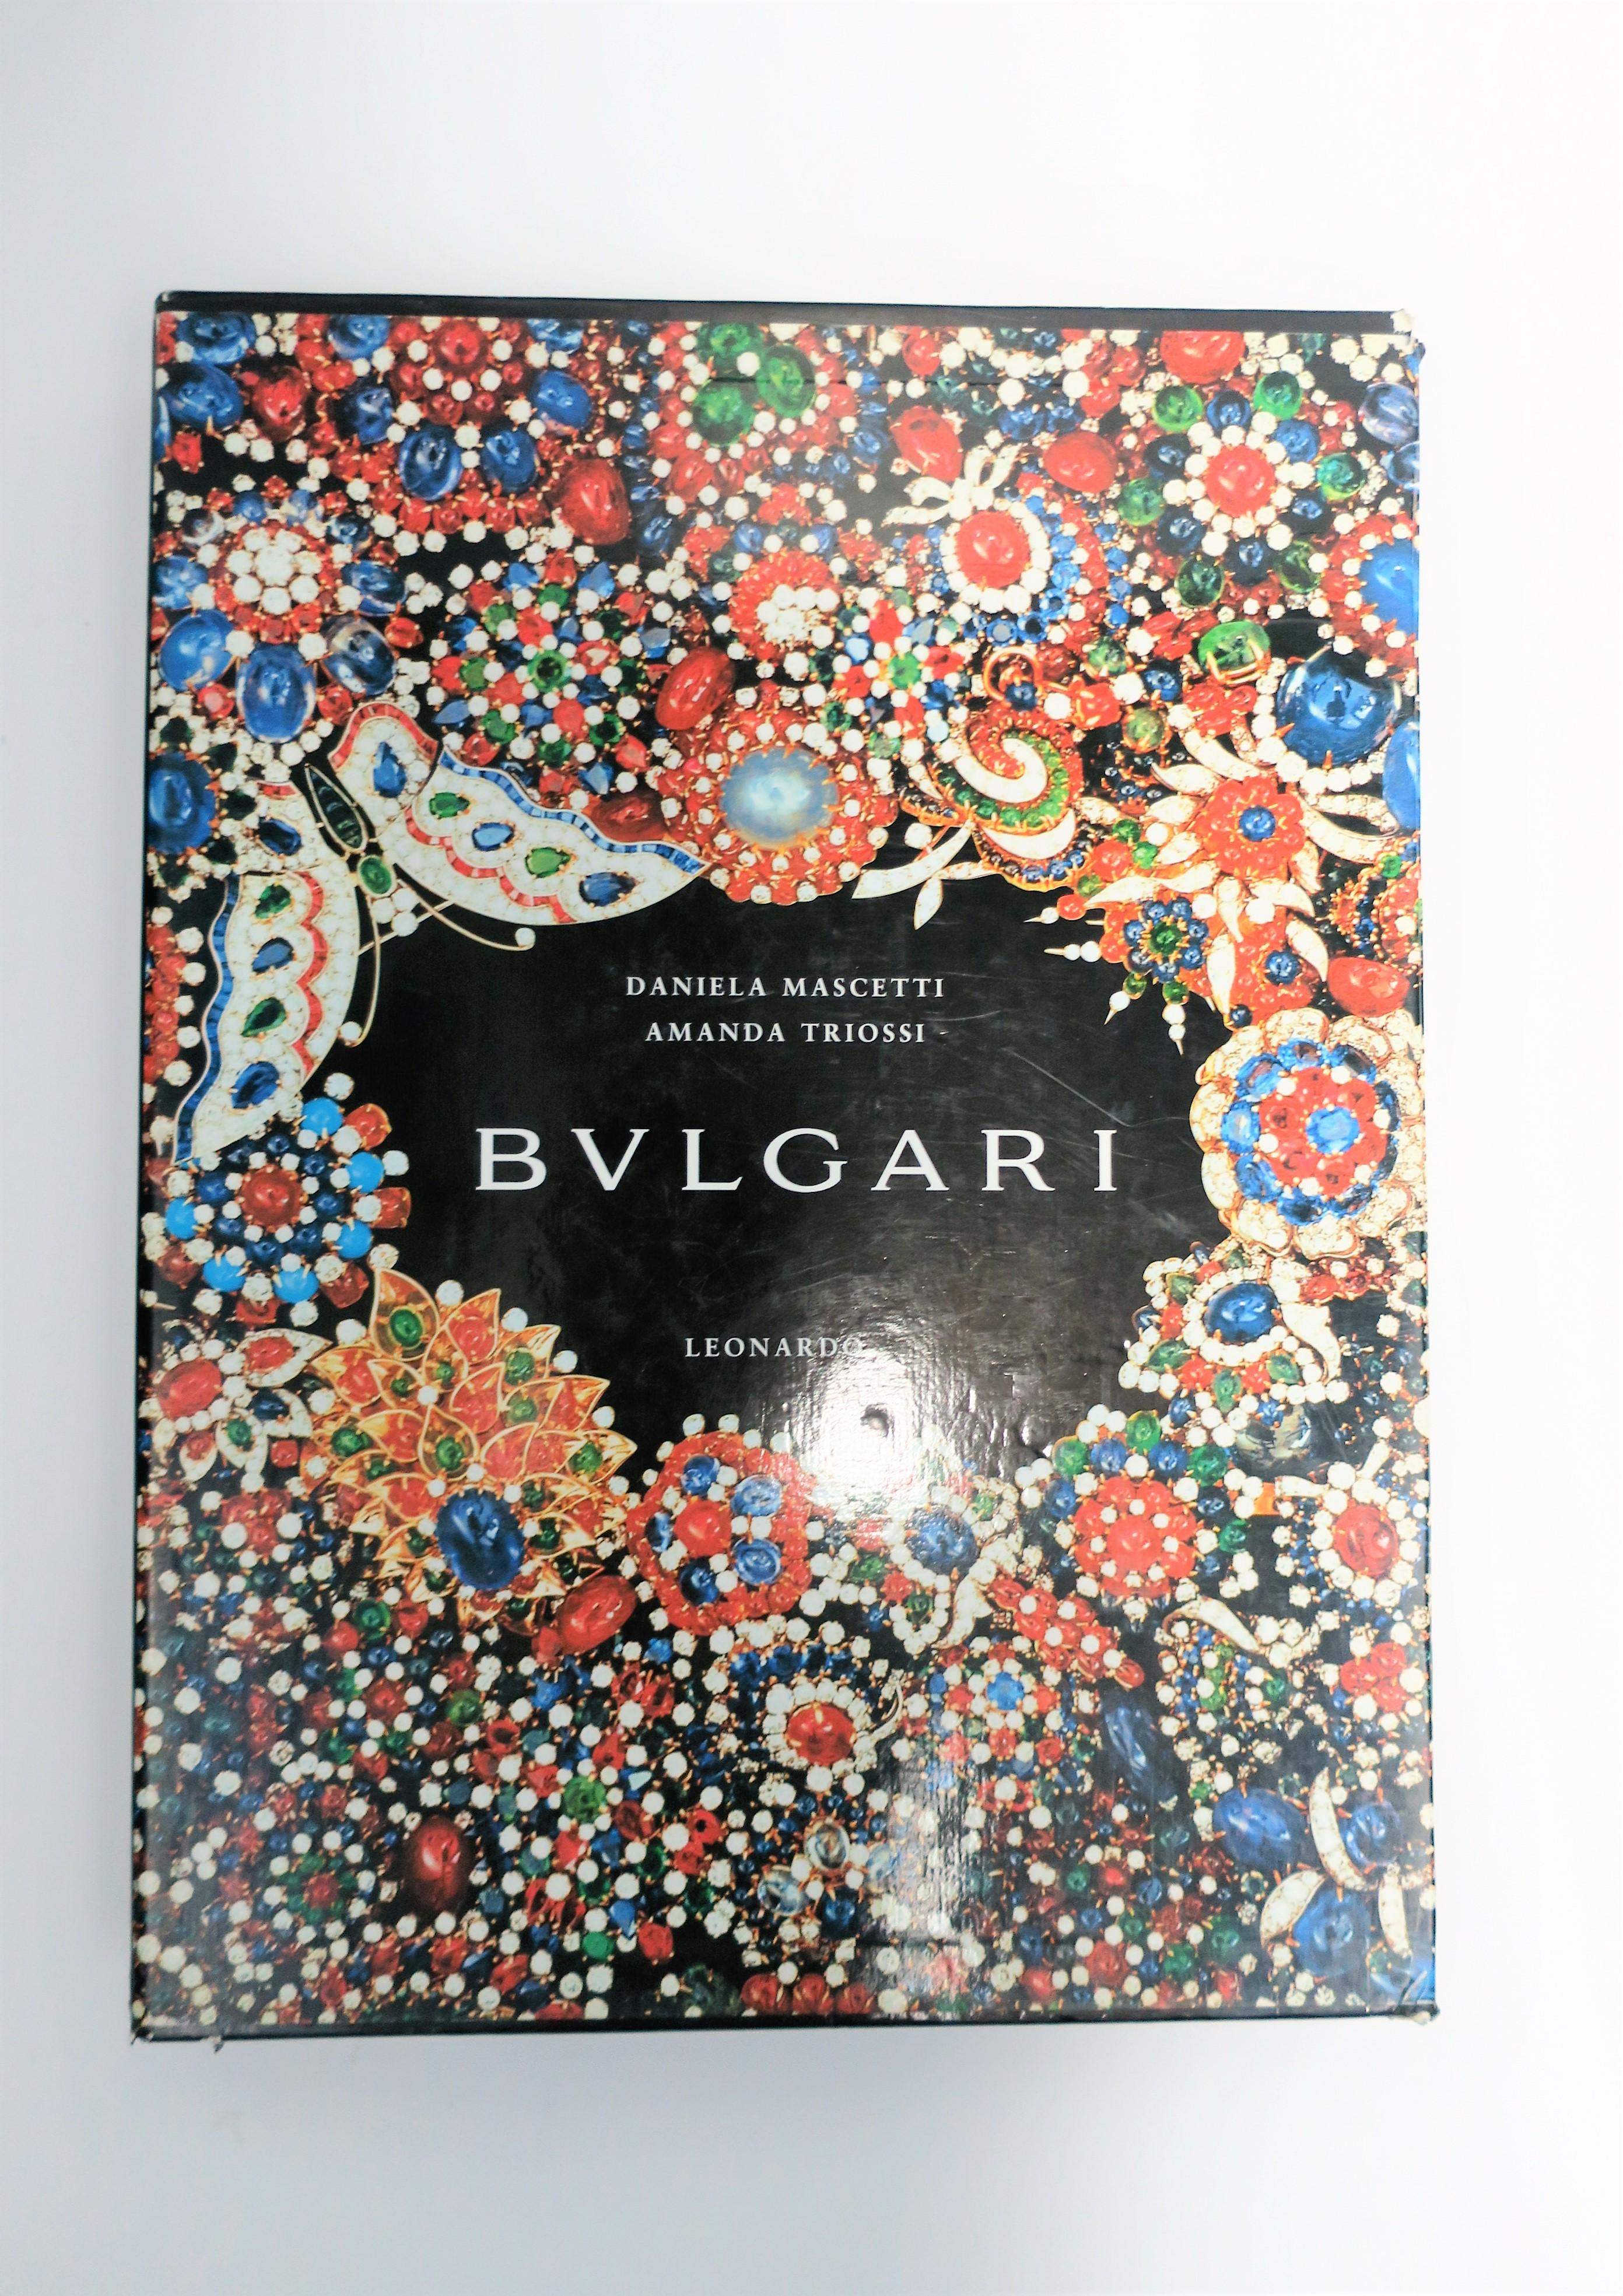 Voici une belle table basse (ou un livre de bibliothèque) sur l'histoire de l'emblématique joaillier de luxe italien Bvlgari (ou Bulgari), vers les années 1990, en Italie. Le livre couvre l'histoire de Bulgari dans la création de bijoux iconiques et